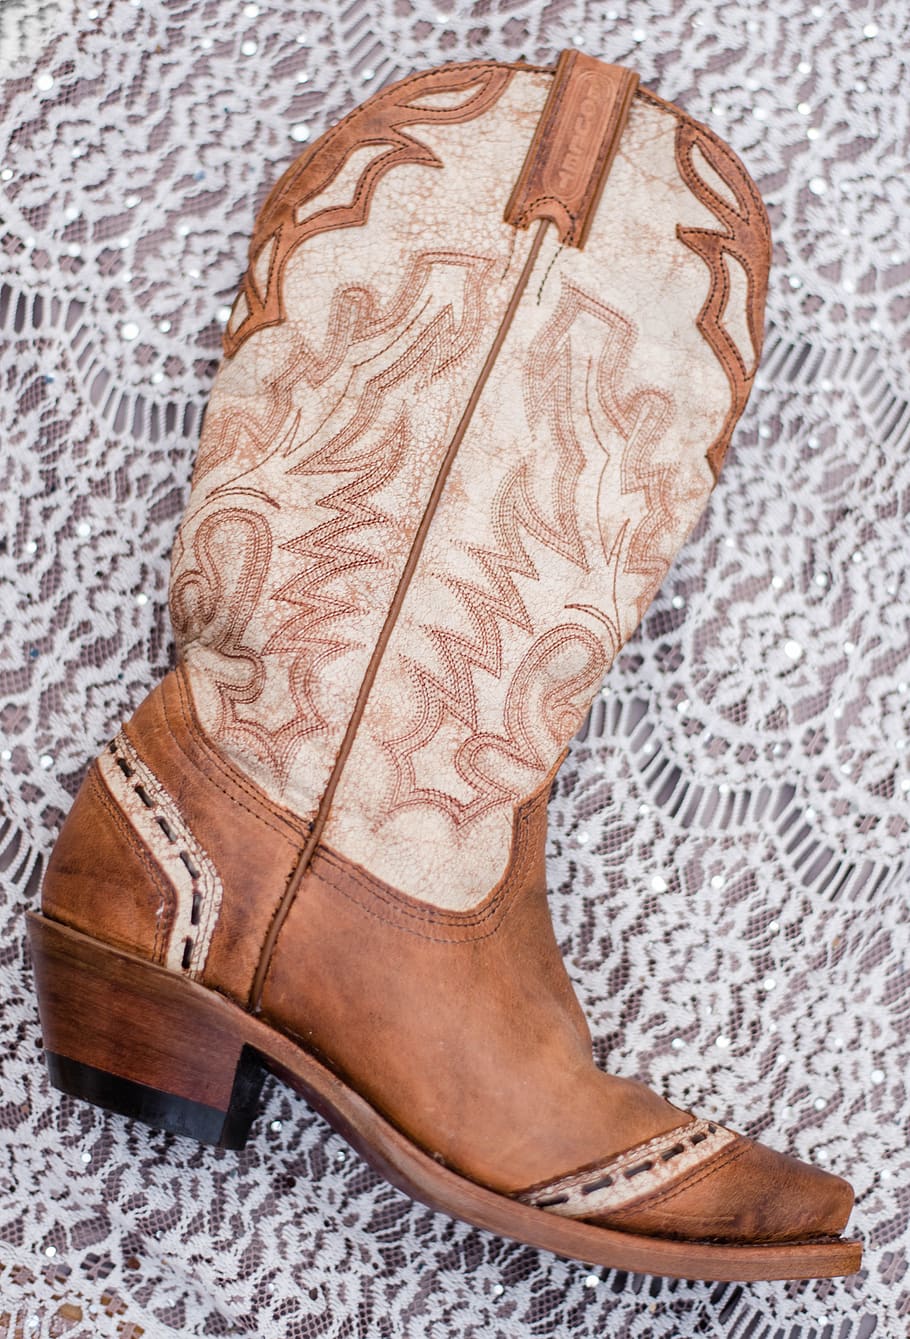 botas vaqueras, botas, vaquero, western, vaquera, country, vaqueros, country girl, música country, zapatos